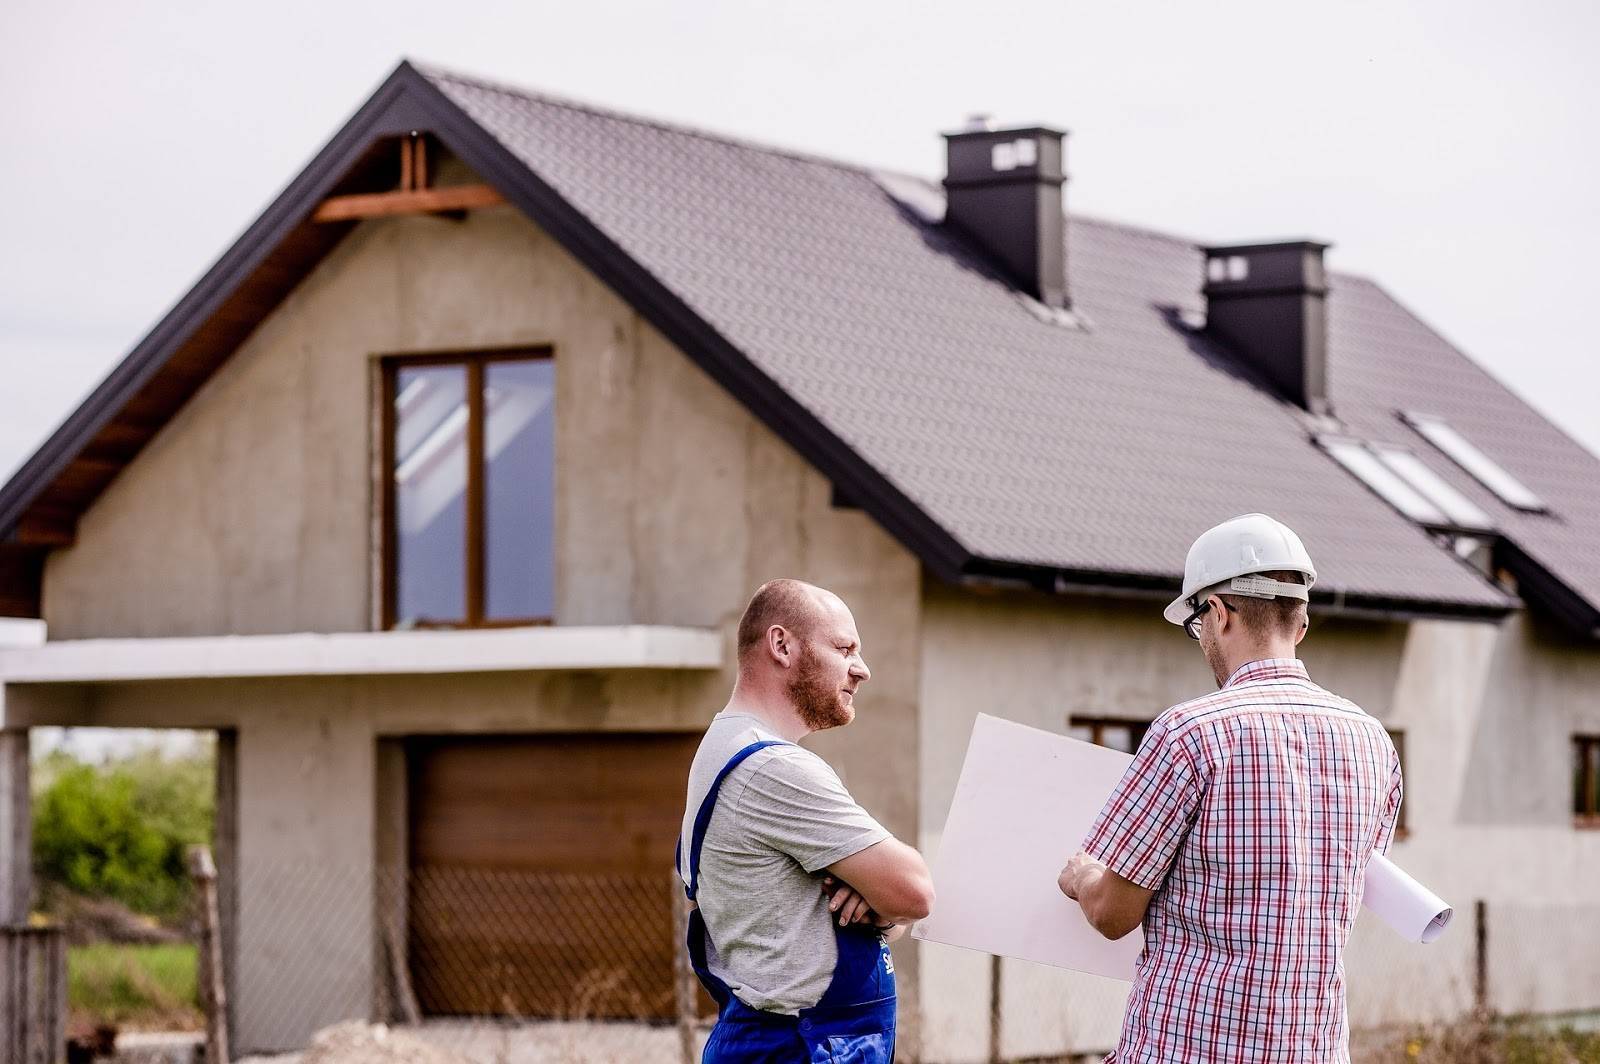 Как дешево построить дом: выбор материалов, пошаговое руководство самостоятельного строительства - samvsestroy.ru